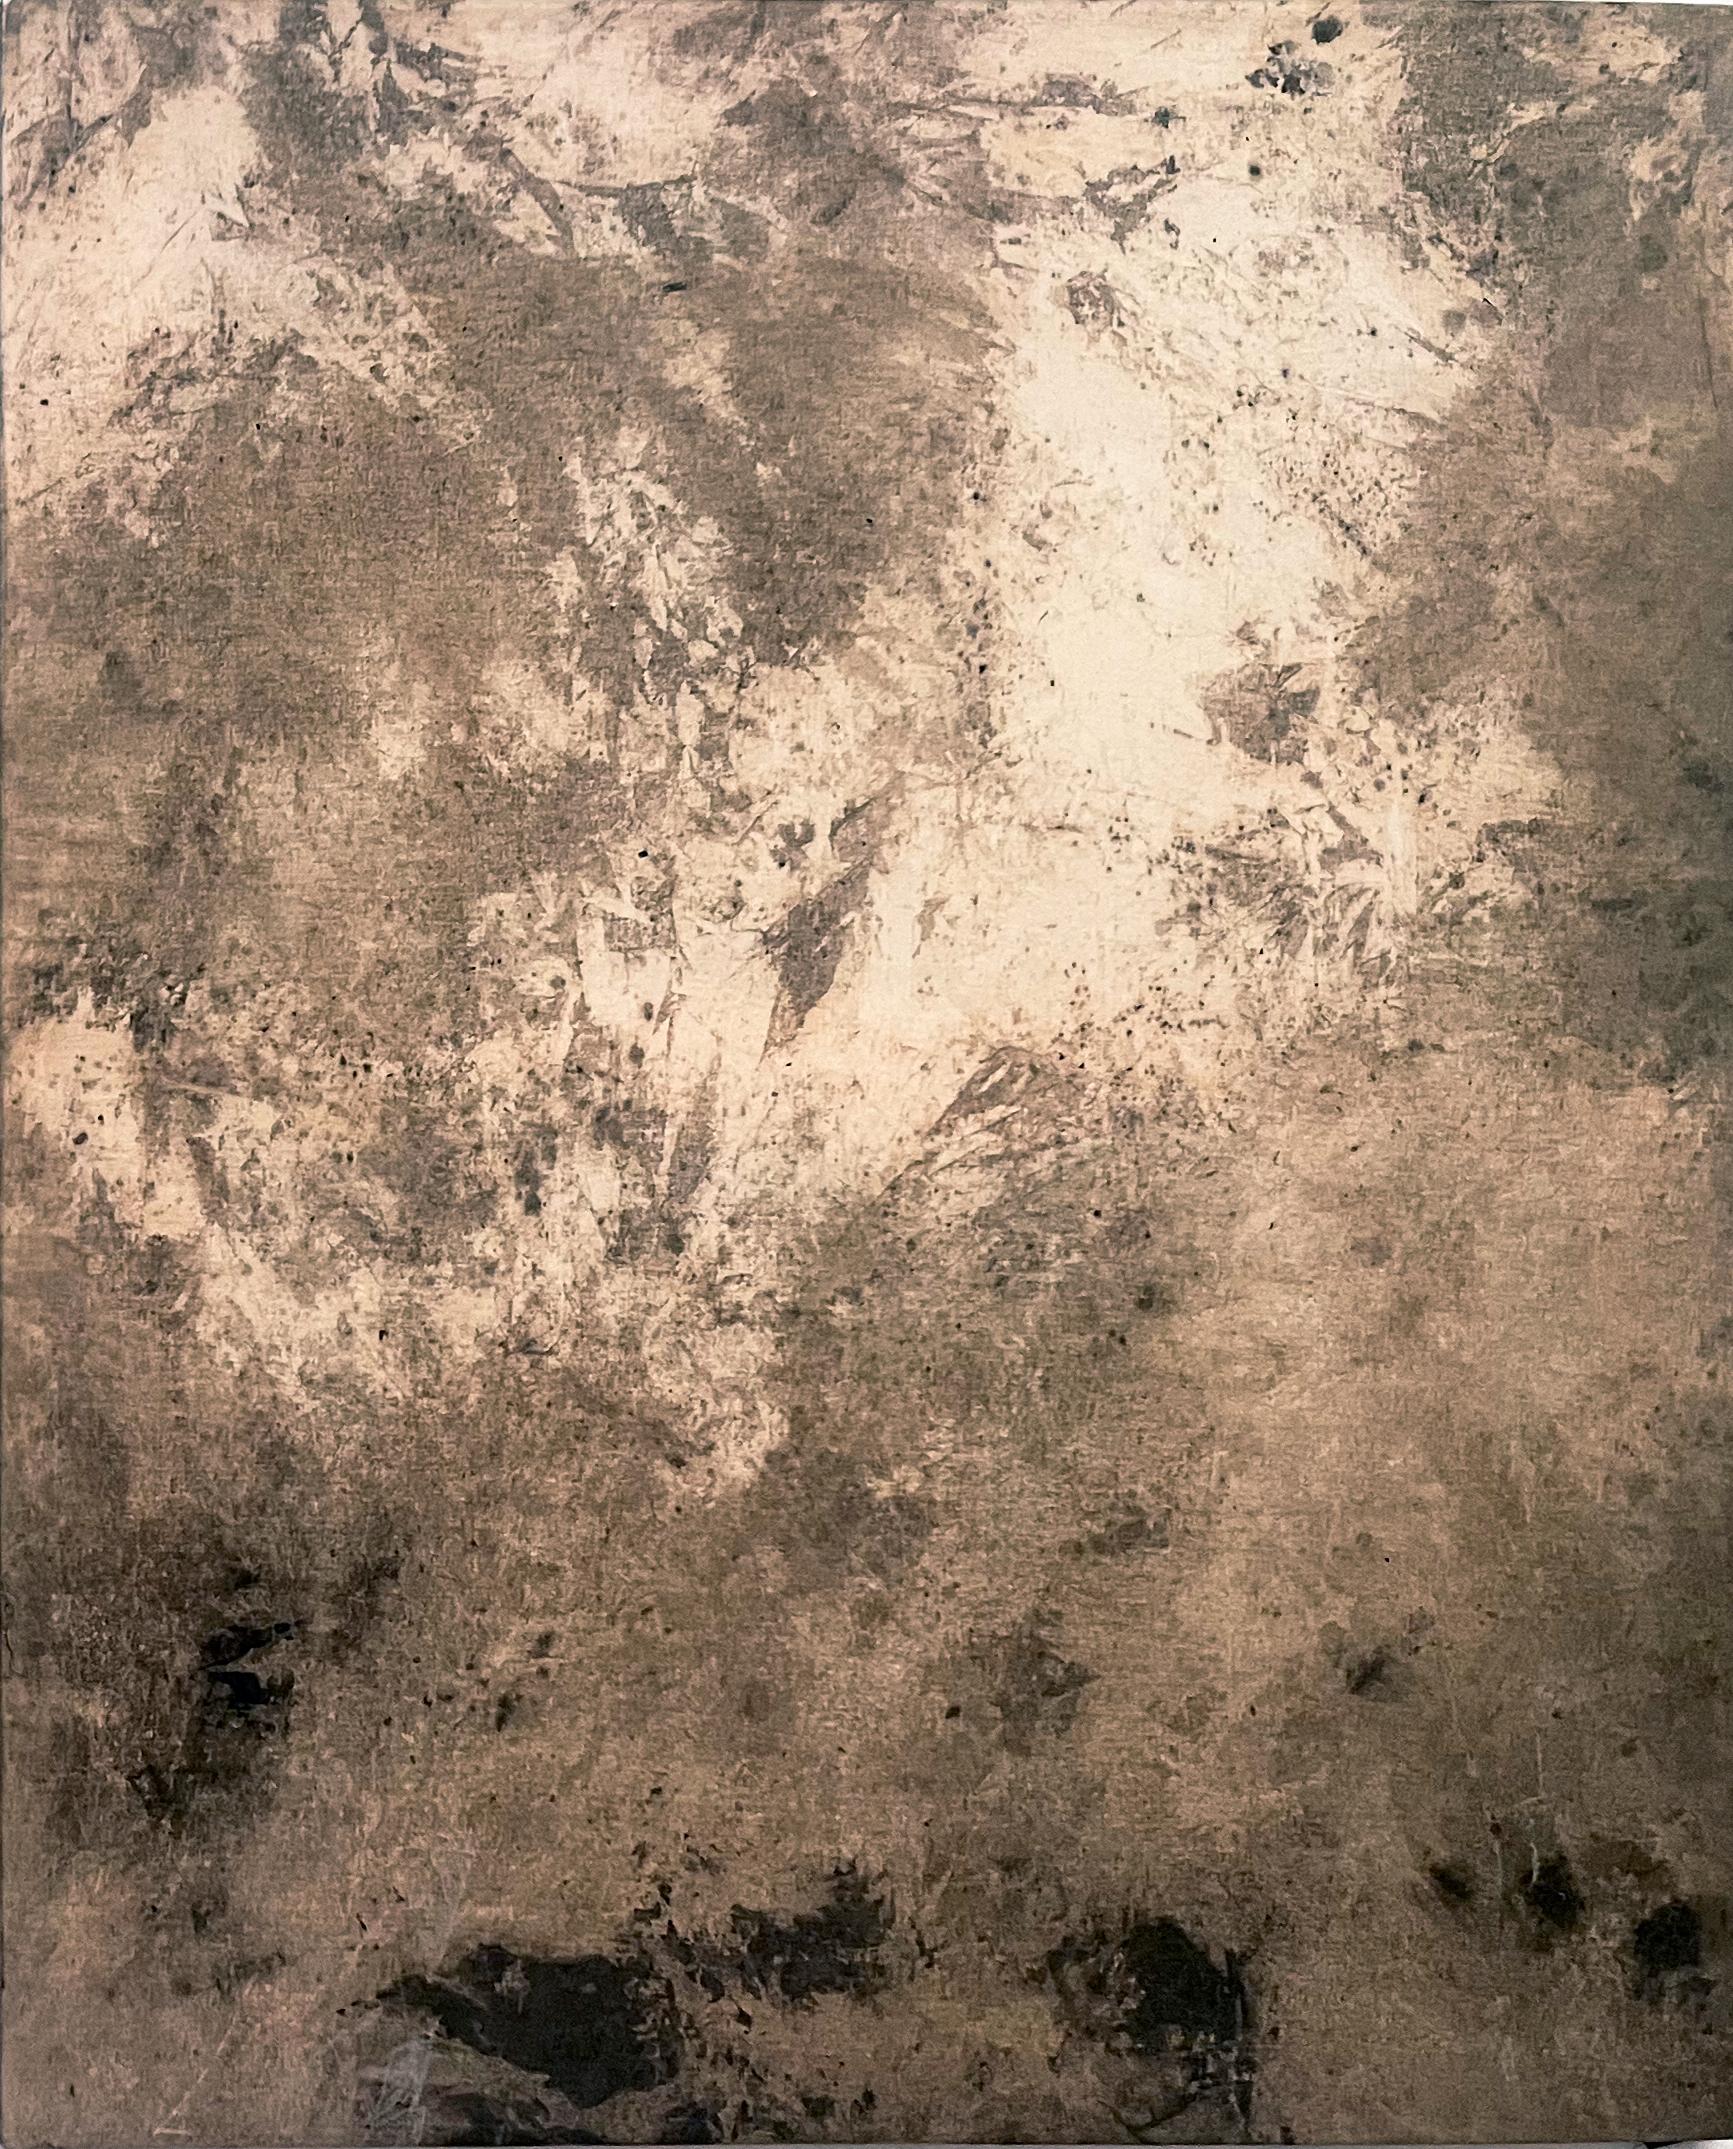 Eau souterraine
huile sur toile de coton
110 x180cm
Art original 
Prêt à être accroché
diptyque
terre / mer

Marilina Marchica, née à Agrigento, où elle travaille et vit,
elle a obtenu un diplôme en peinture à l'Académie des beaux-arts de Bologne en